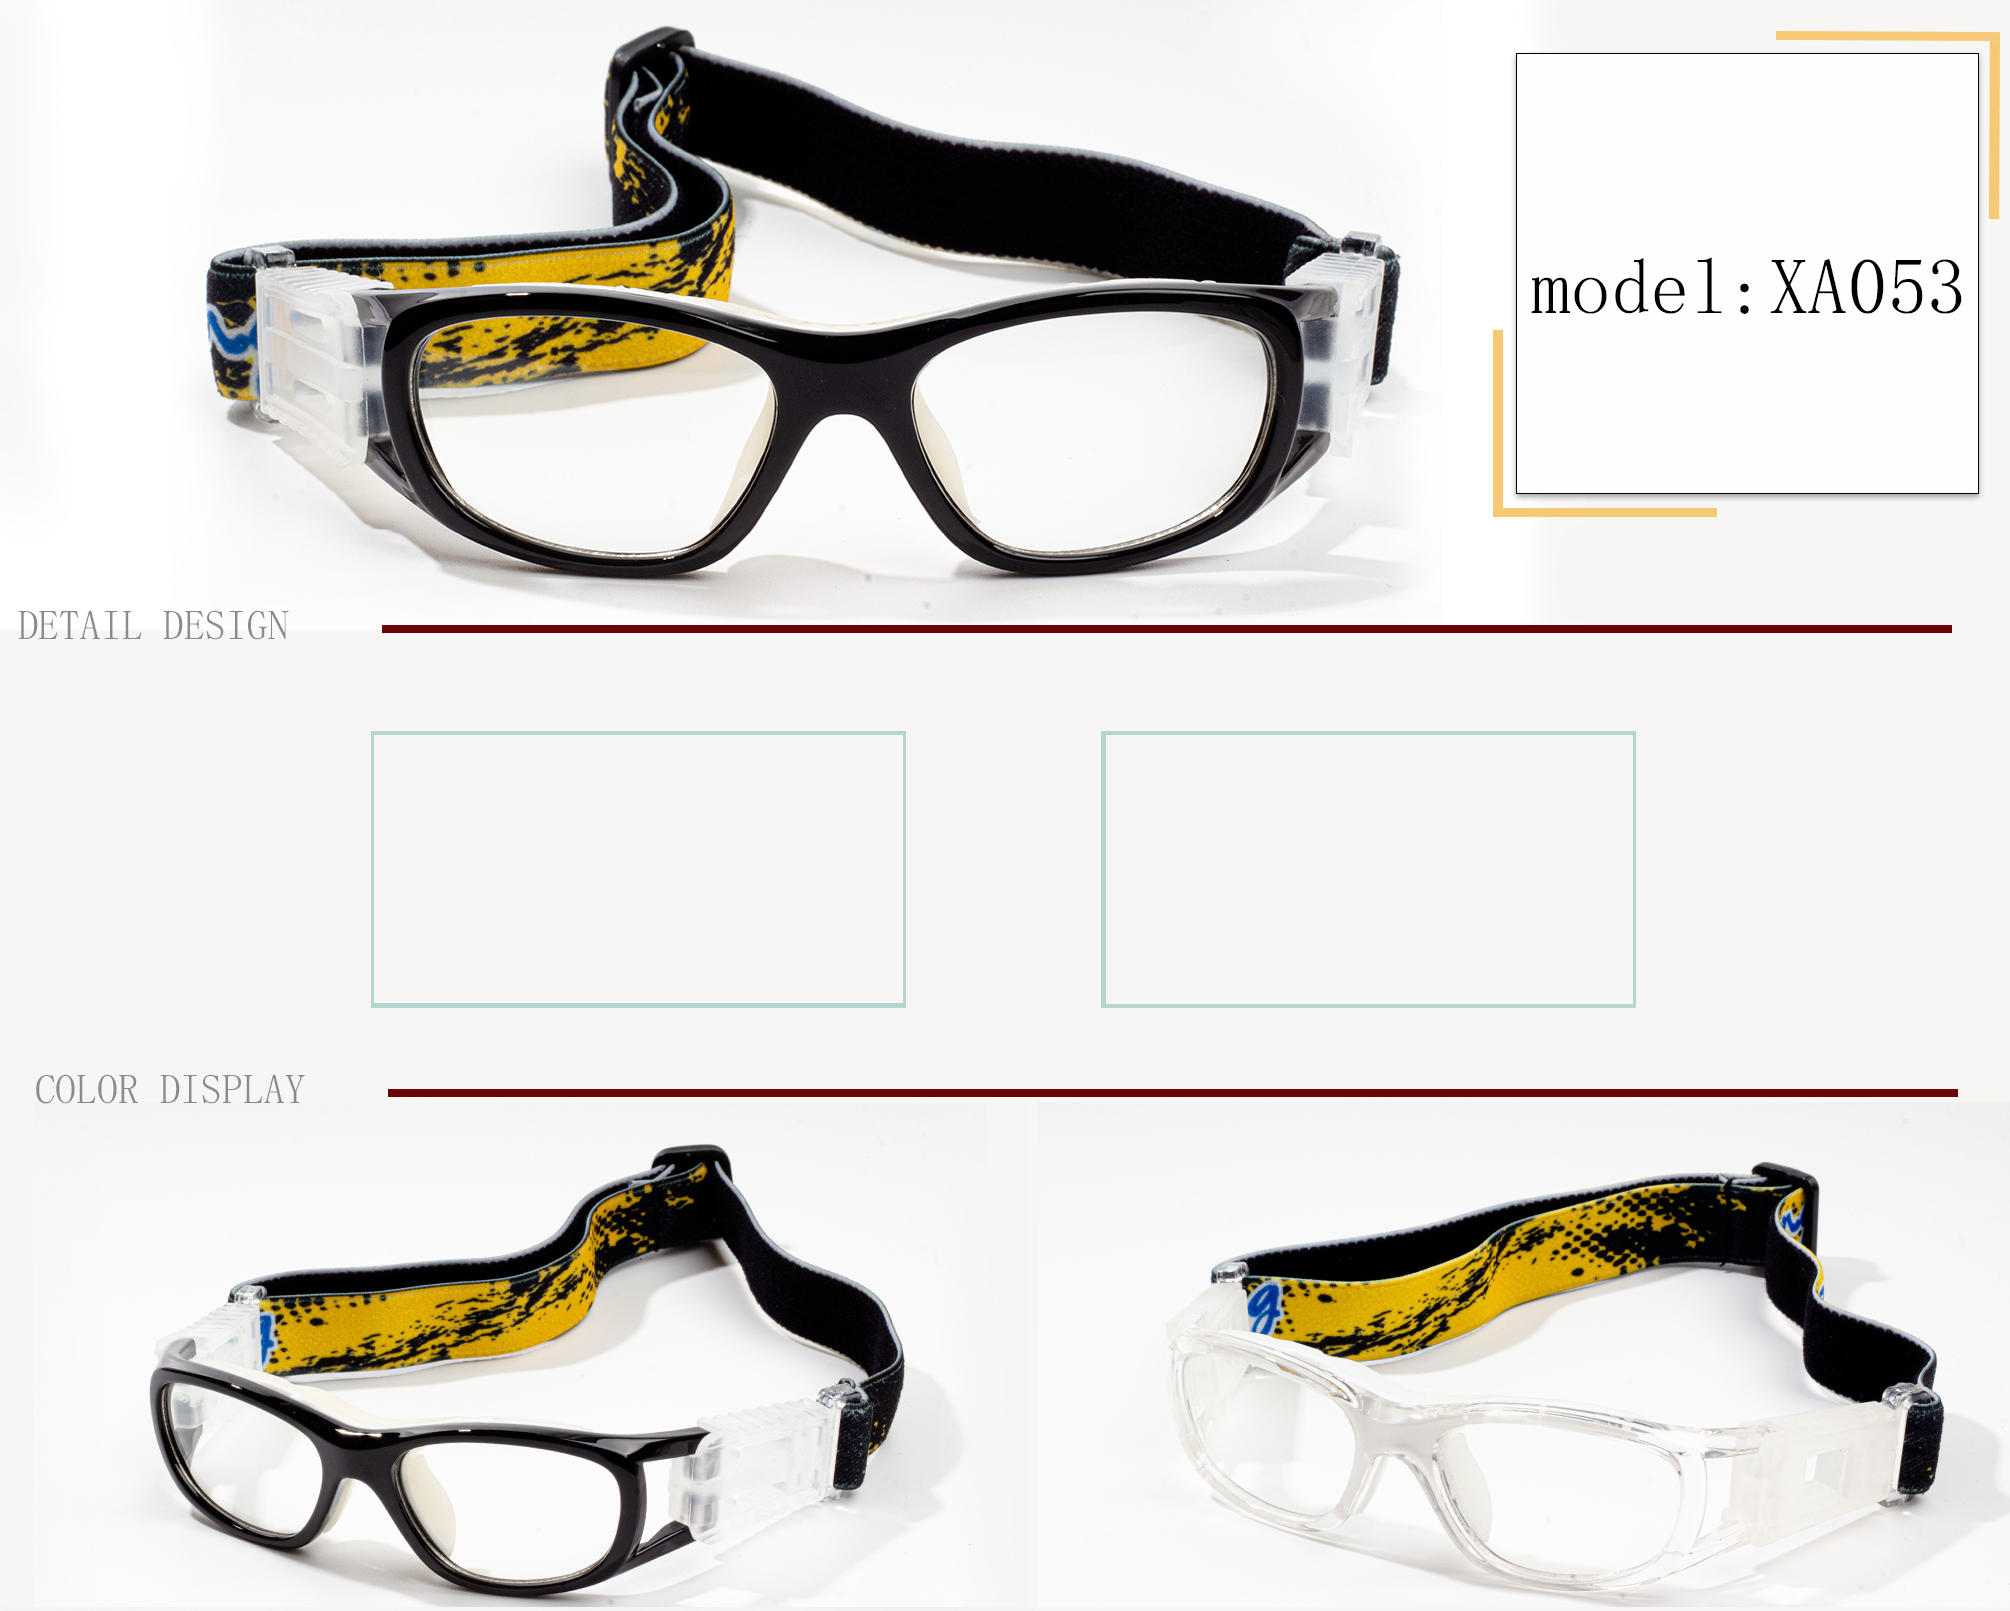 أنواع إطارات النظارات